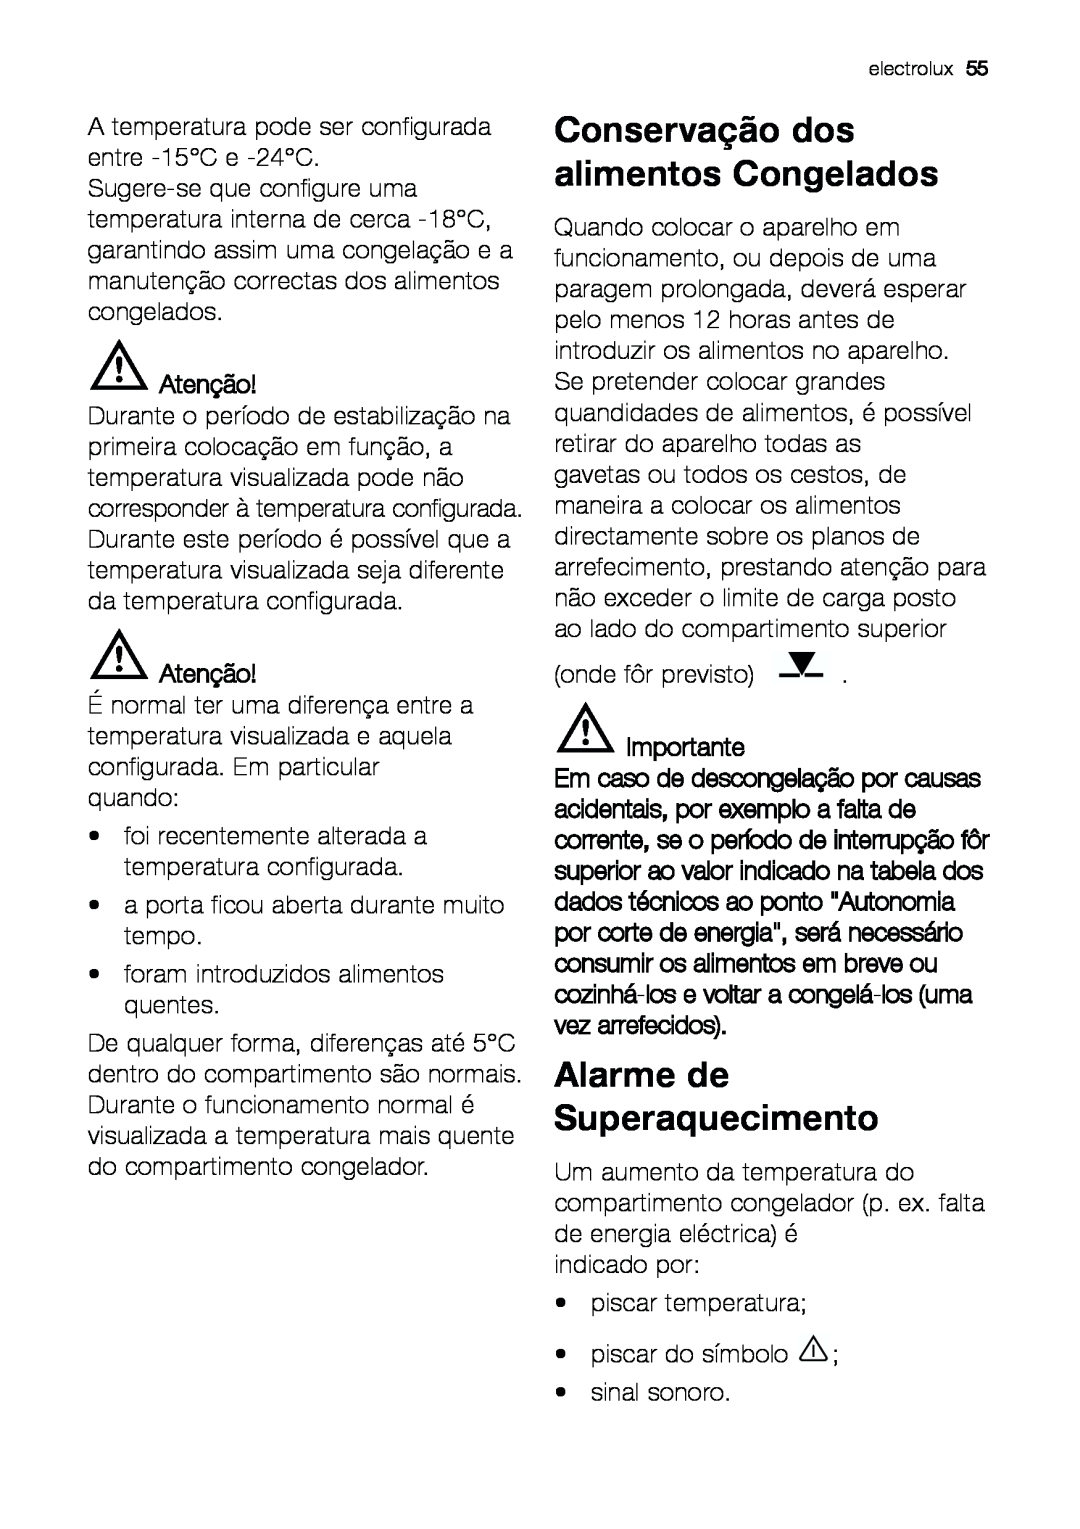 Electrolux EUF 27391 X manual Alarme de Superaquecimento, Conservação dos alimentos Congelados, Atenção, Importante 